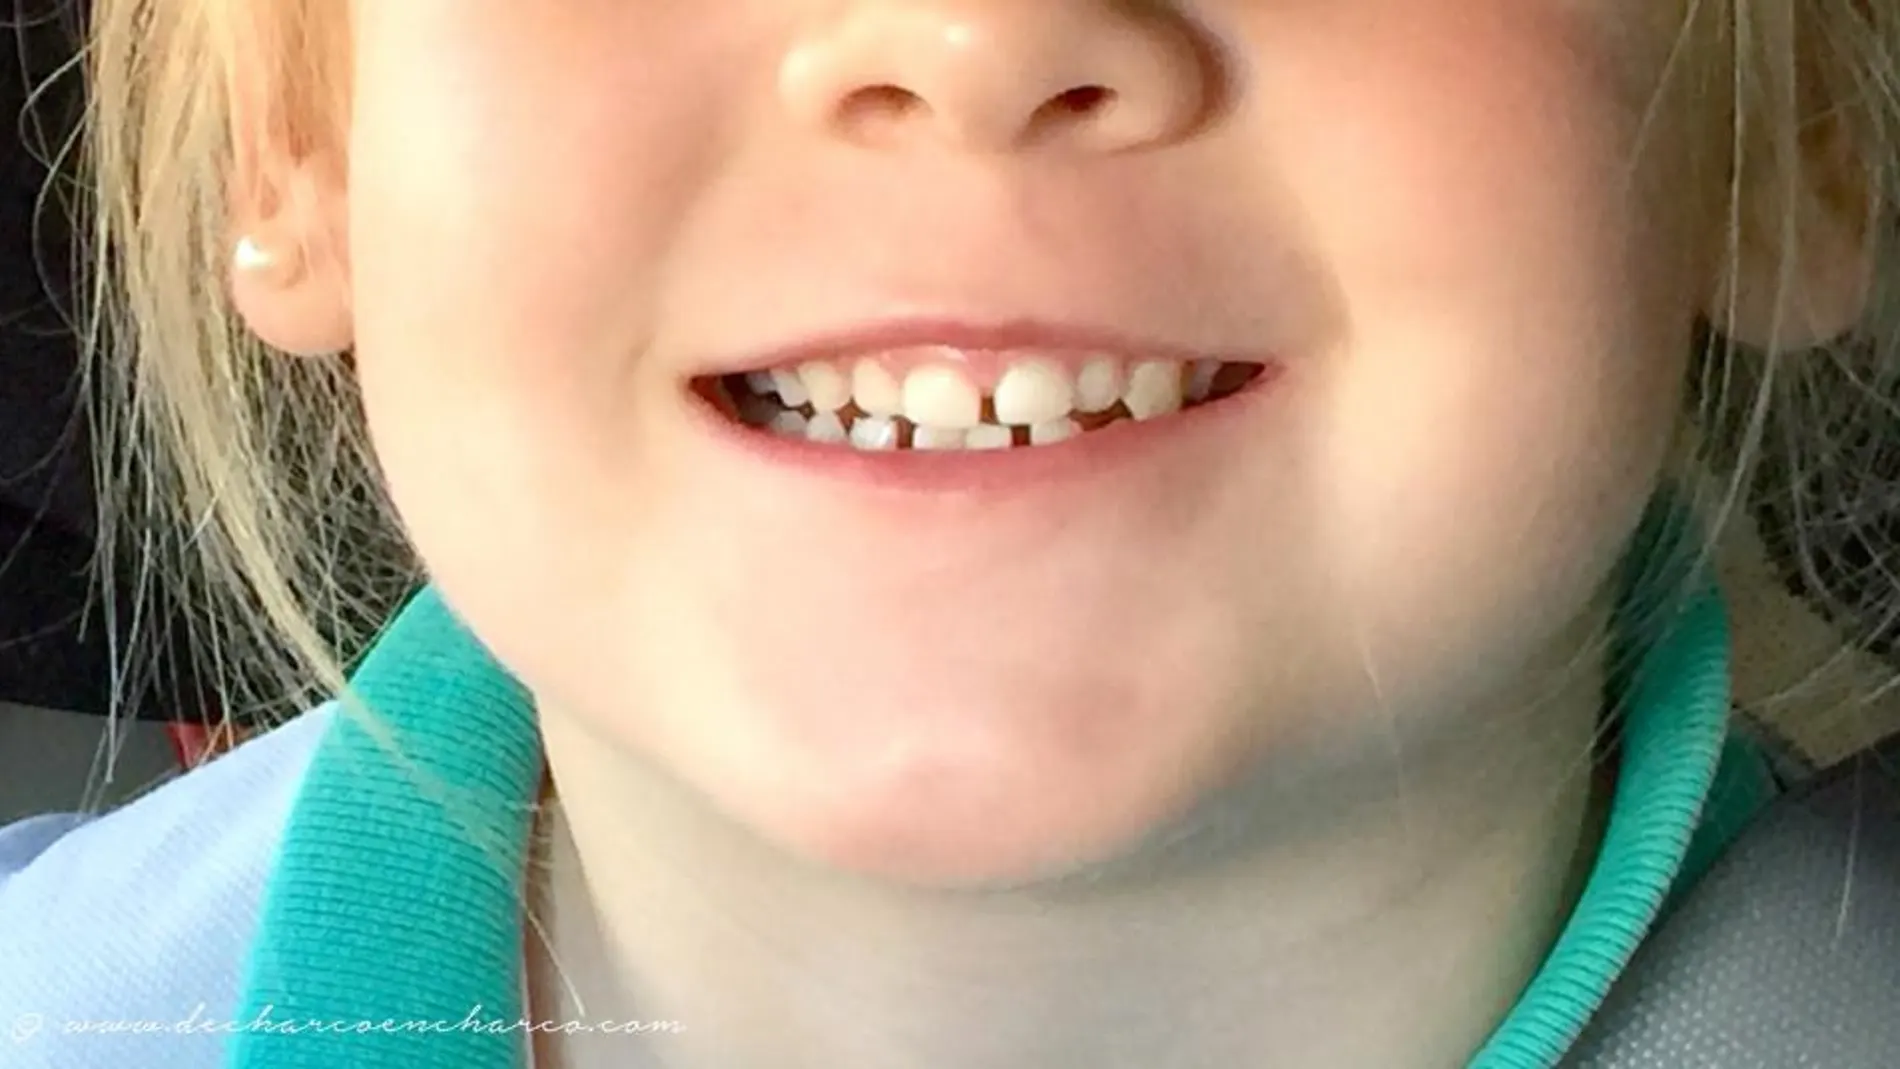 Los dientes de leche: más bocadillos y menos bollos